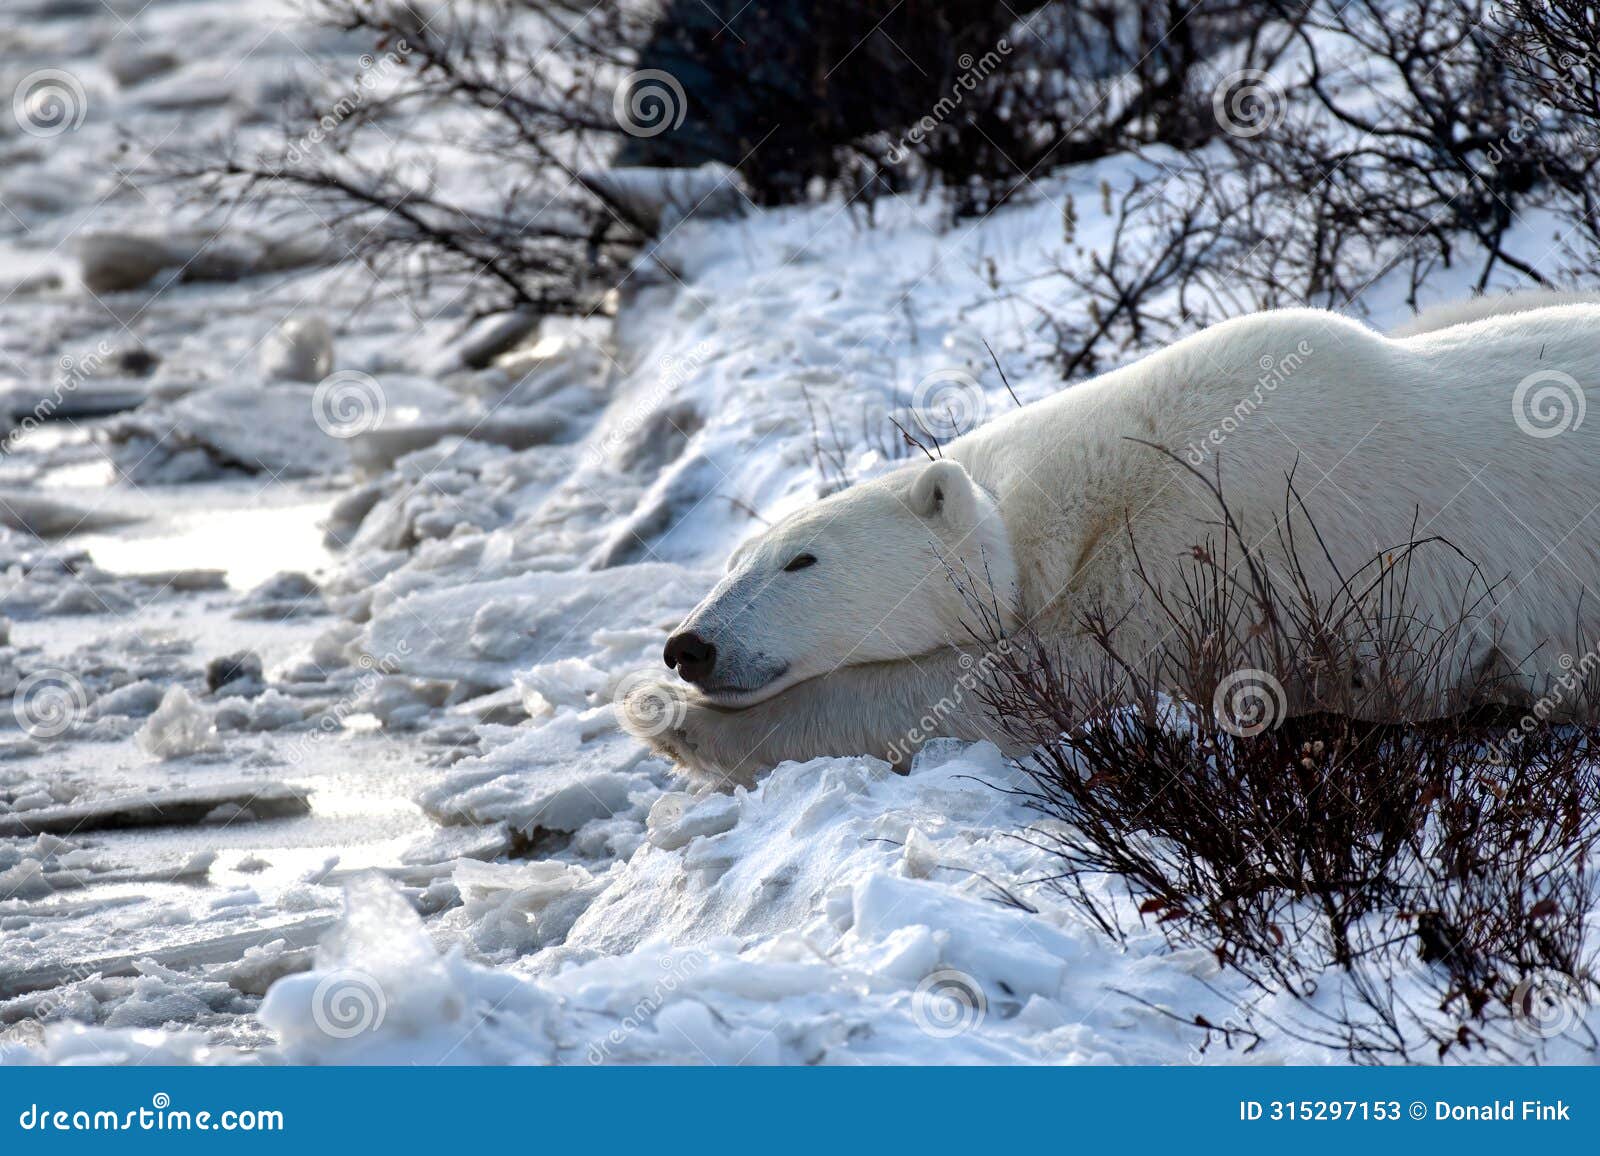 polar bear taking a nap